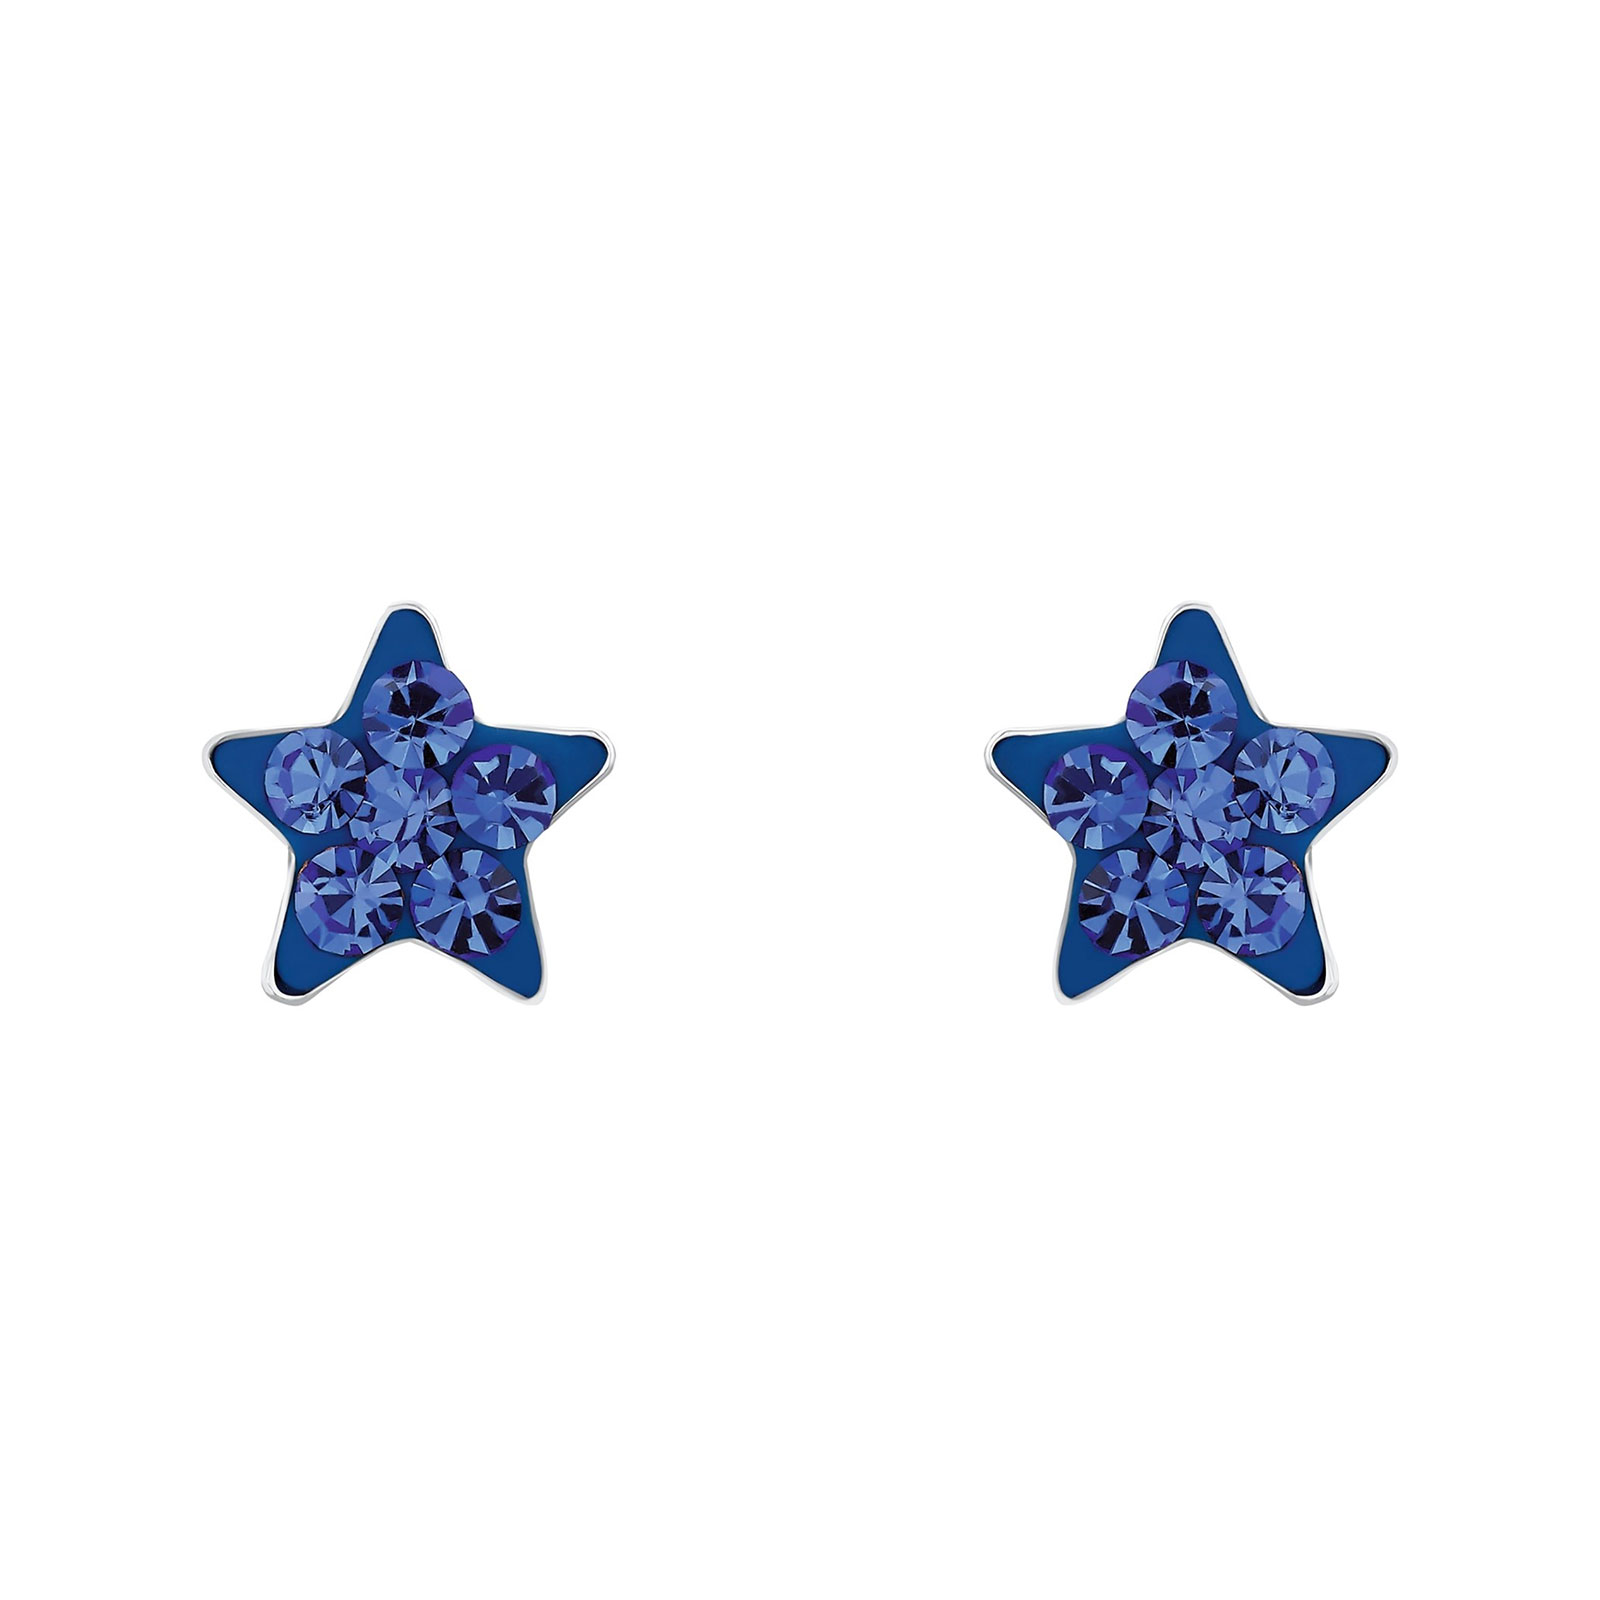 Silverörhängen barn - blå stjärnor, 6 mm